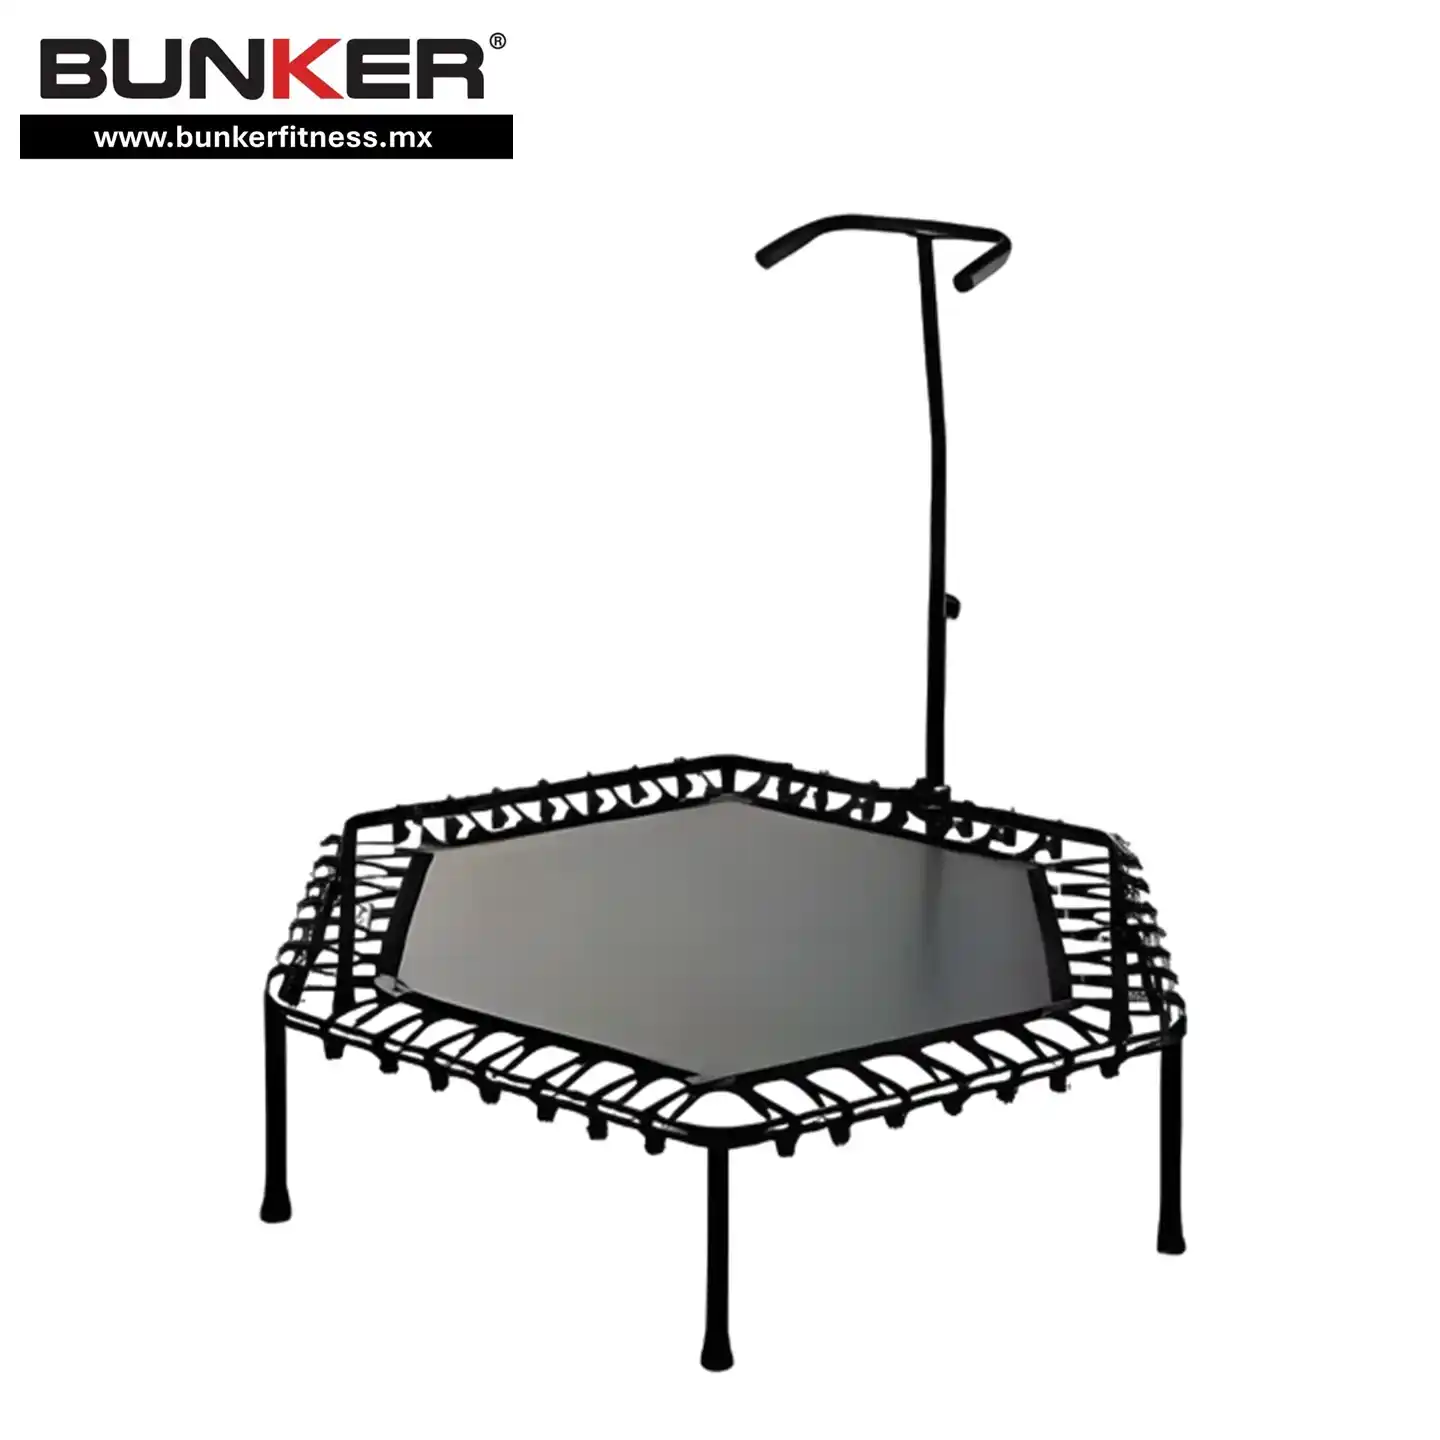 trampolin hex shape para ejercicio bunker fitness para ejercicio y gimnasio en casa bunker gym bunker fitness